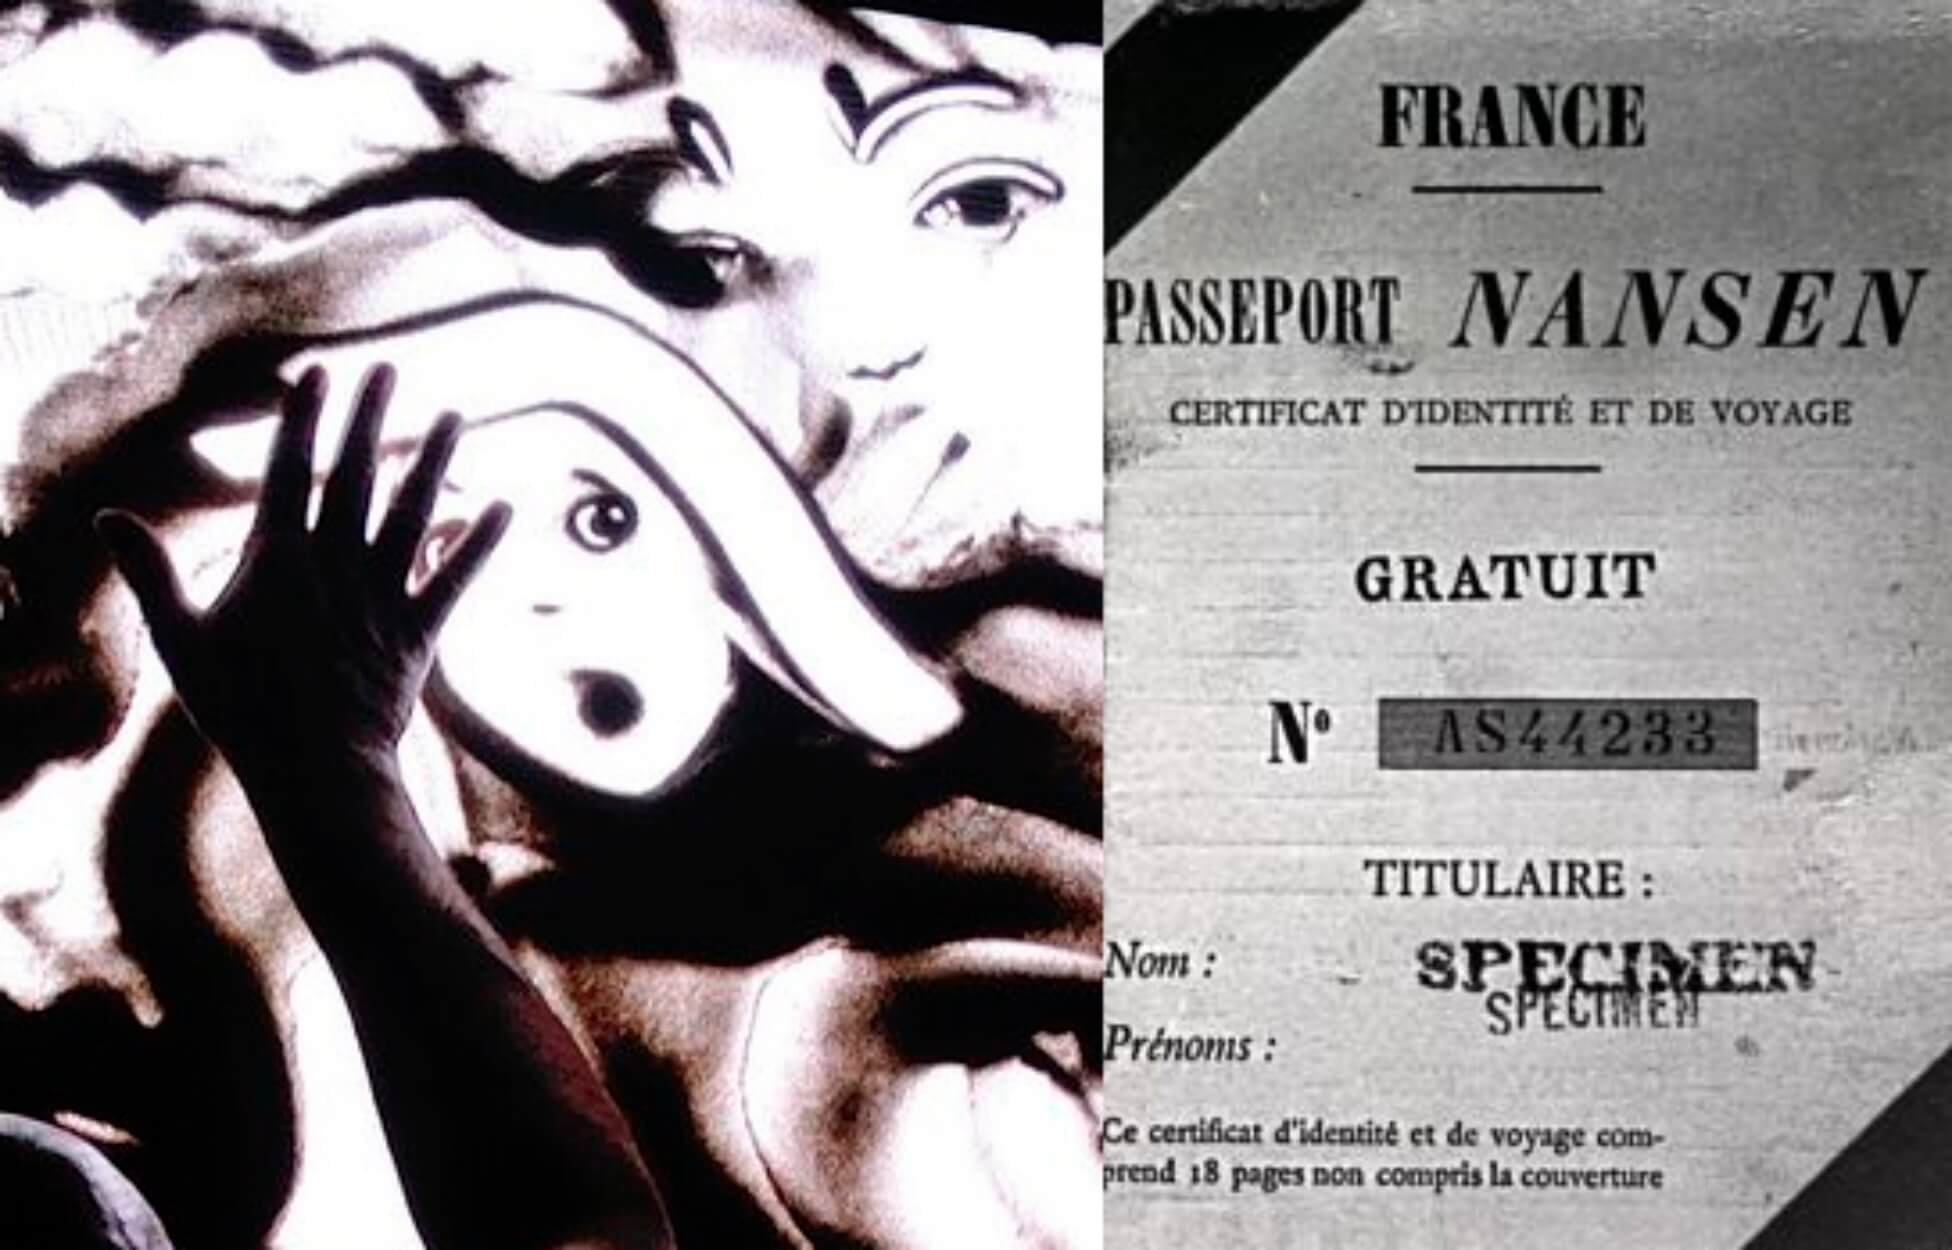 Πρόσφυγες και το διαβατήριο Νάνσεν